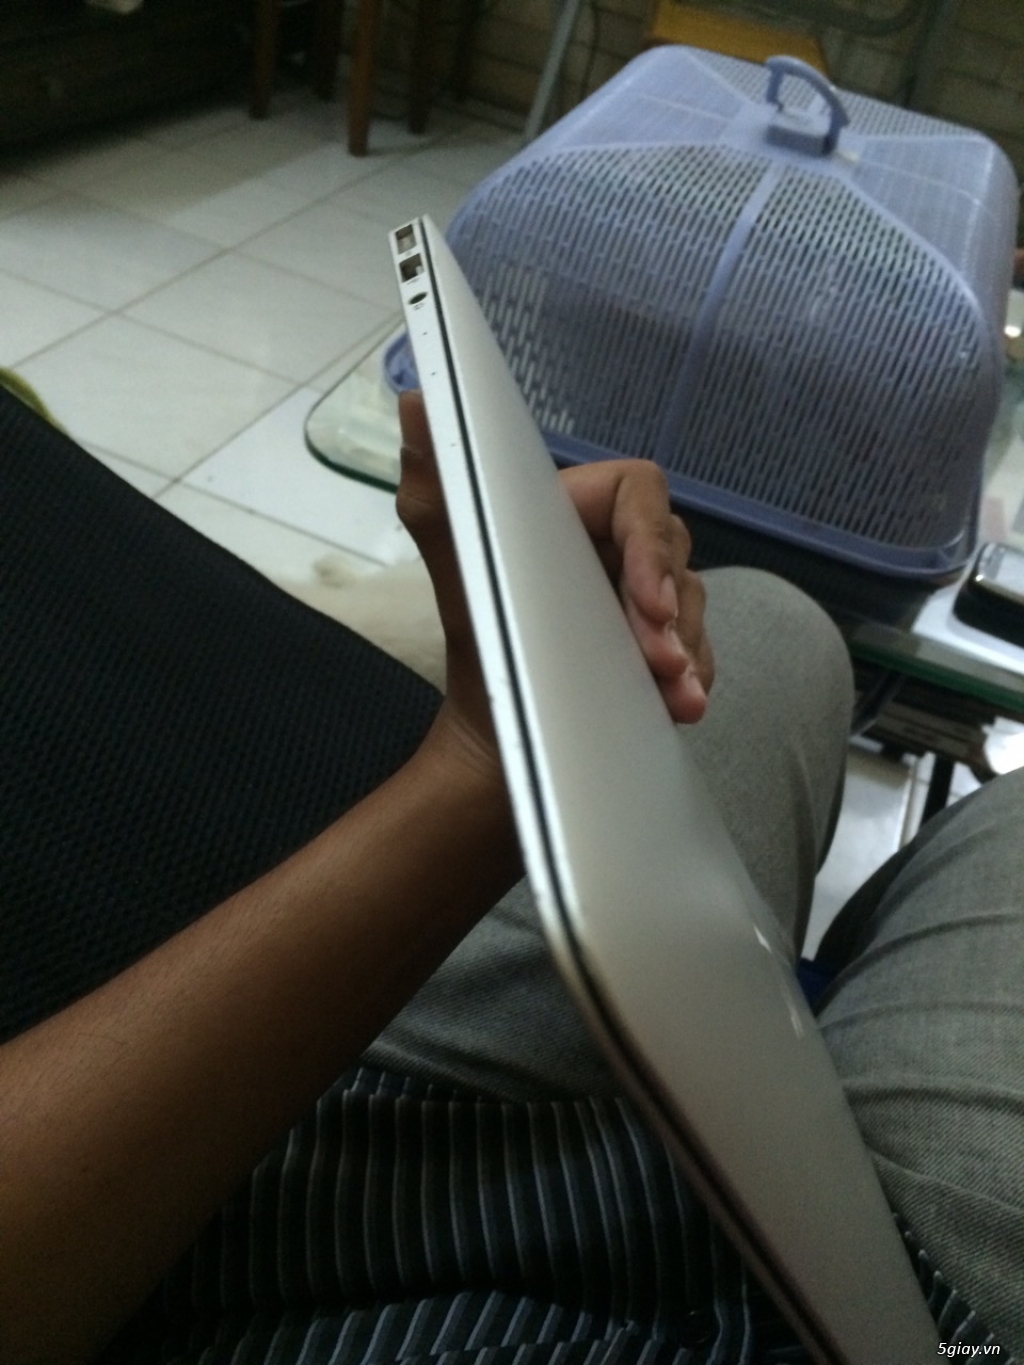 Macbook air 2013 13inch, i7, ram8gb, ngoại hình 99%, giá rẻ - 3